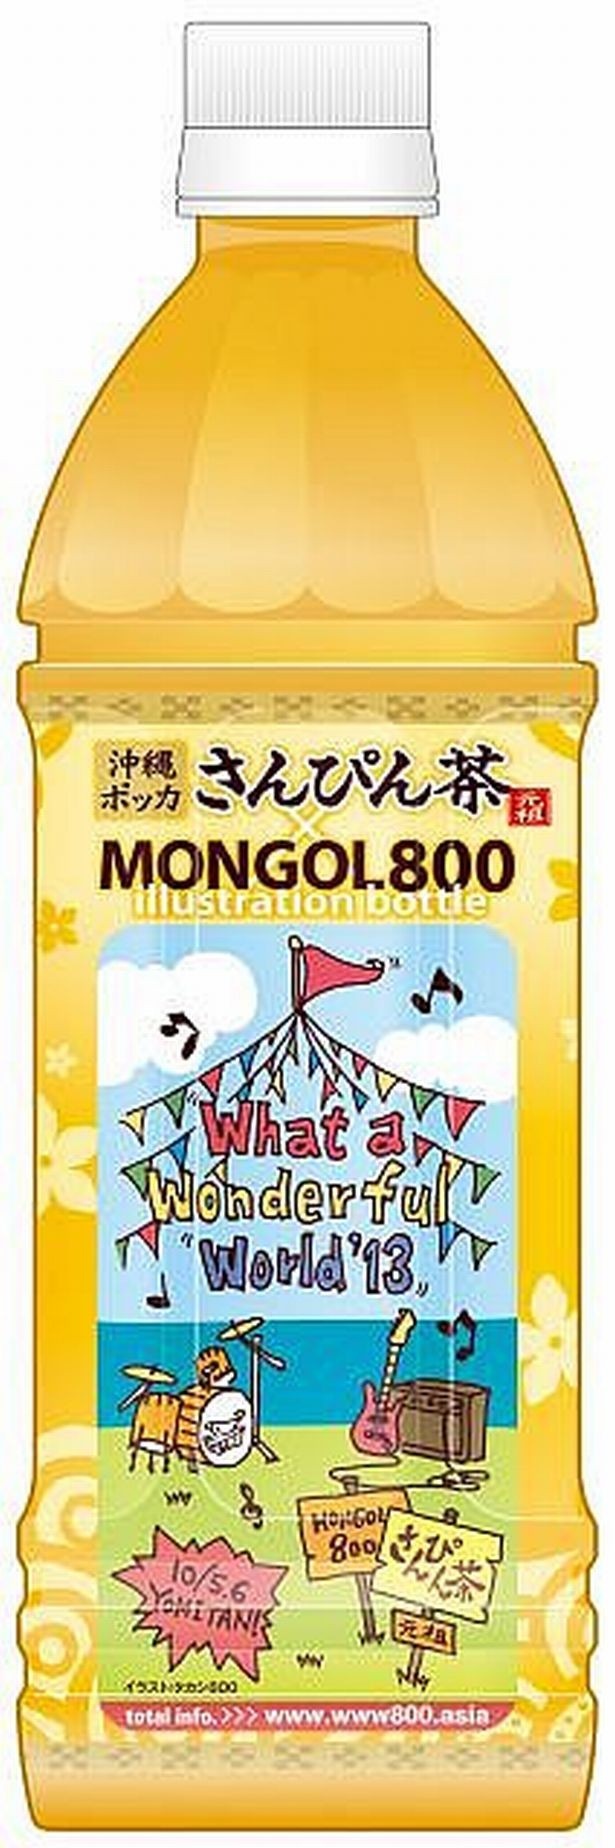 沖縄ポッカのさんぴん茶が期間限定でMONGOL800コラボバージョンに！